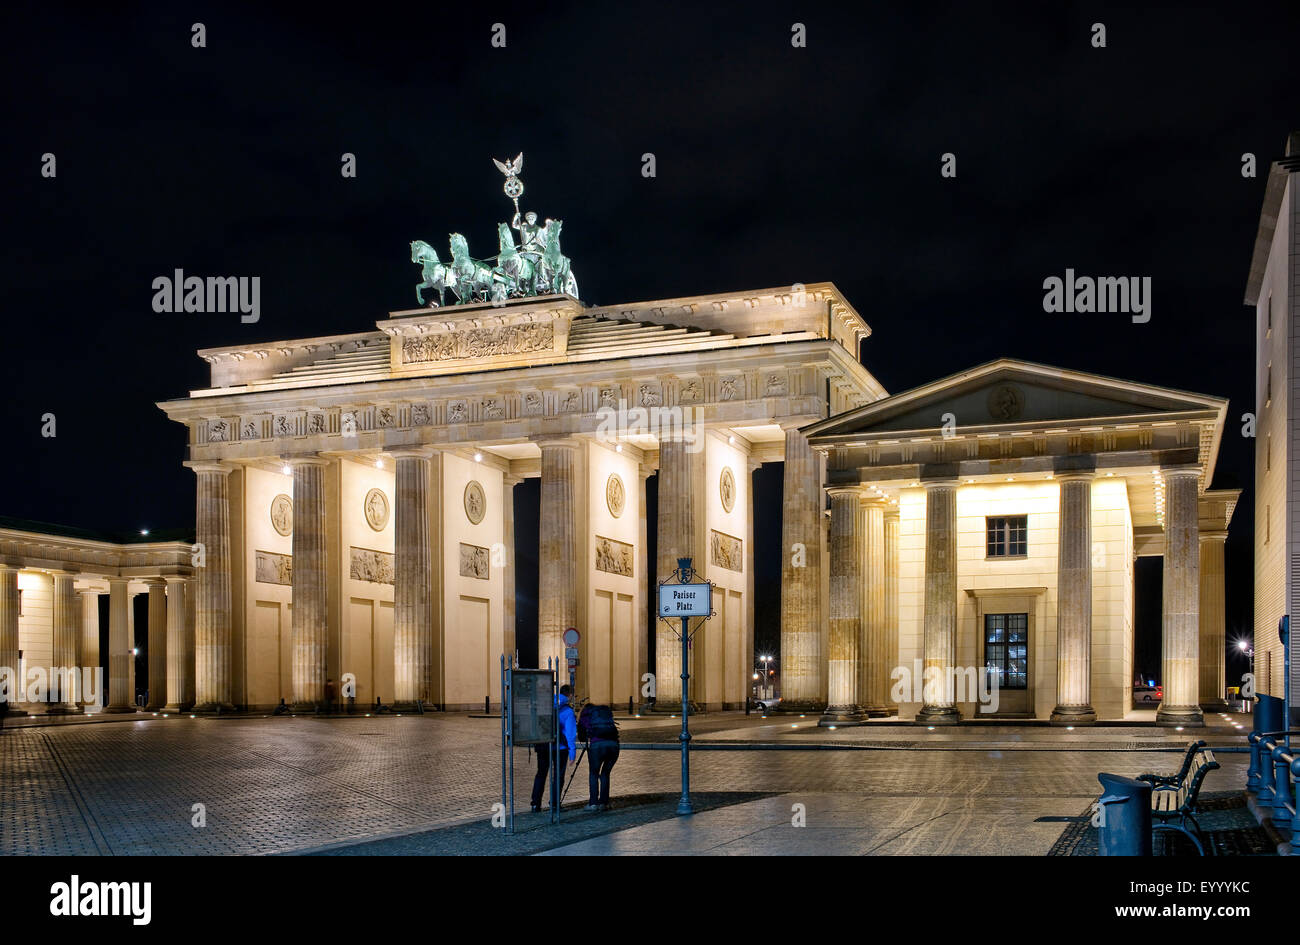 Pariser Platz mit Brandenburger Tor und Quadriga bei Nacht, Deutschland, Berlin Stockfoto